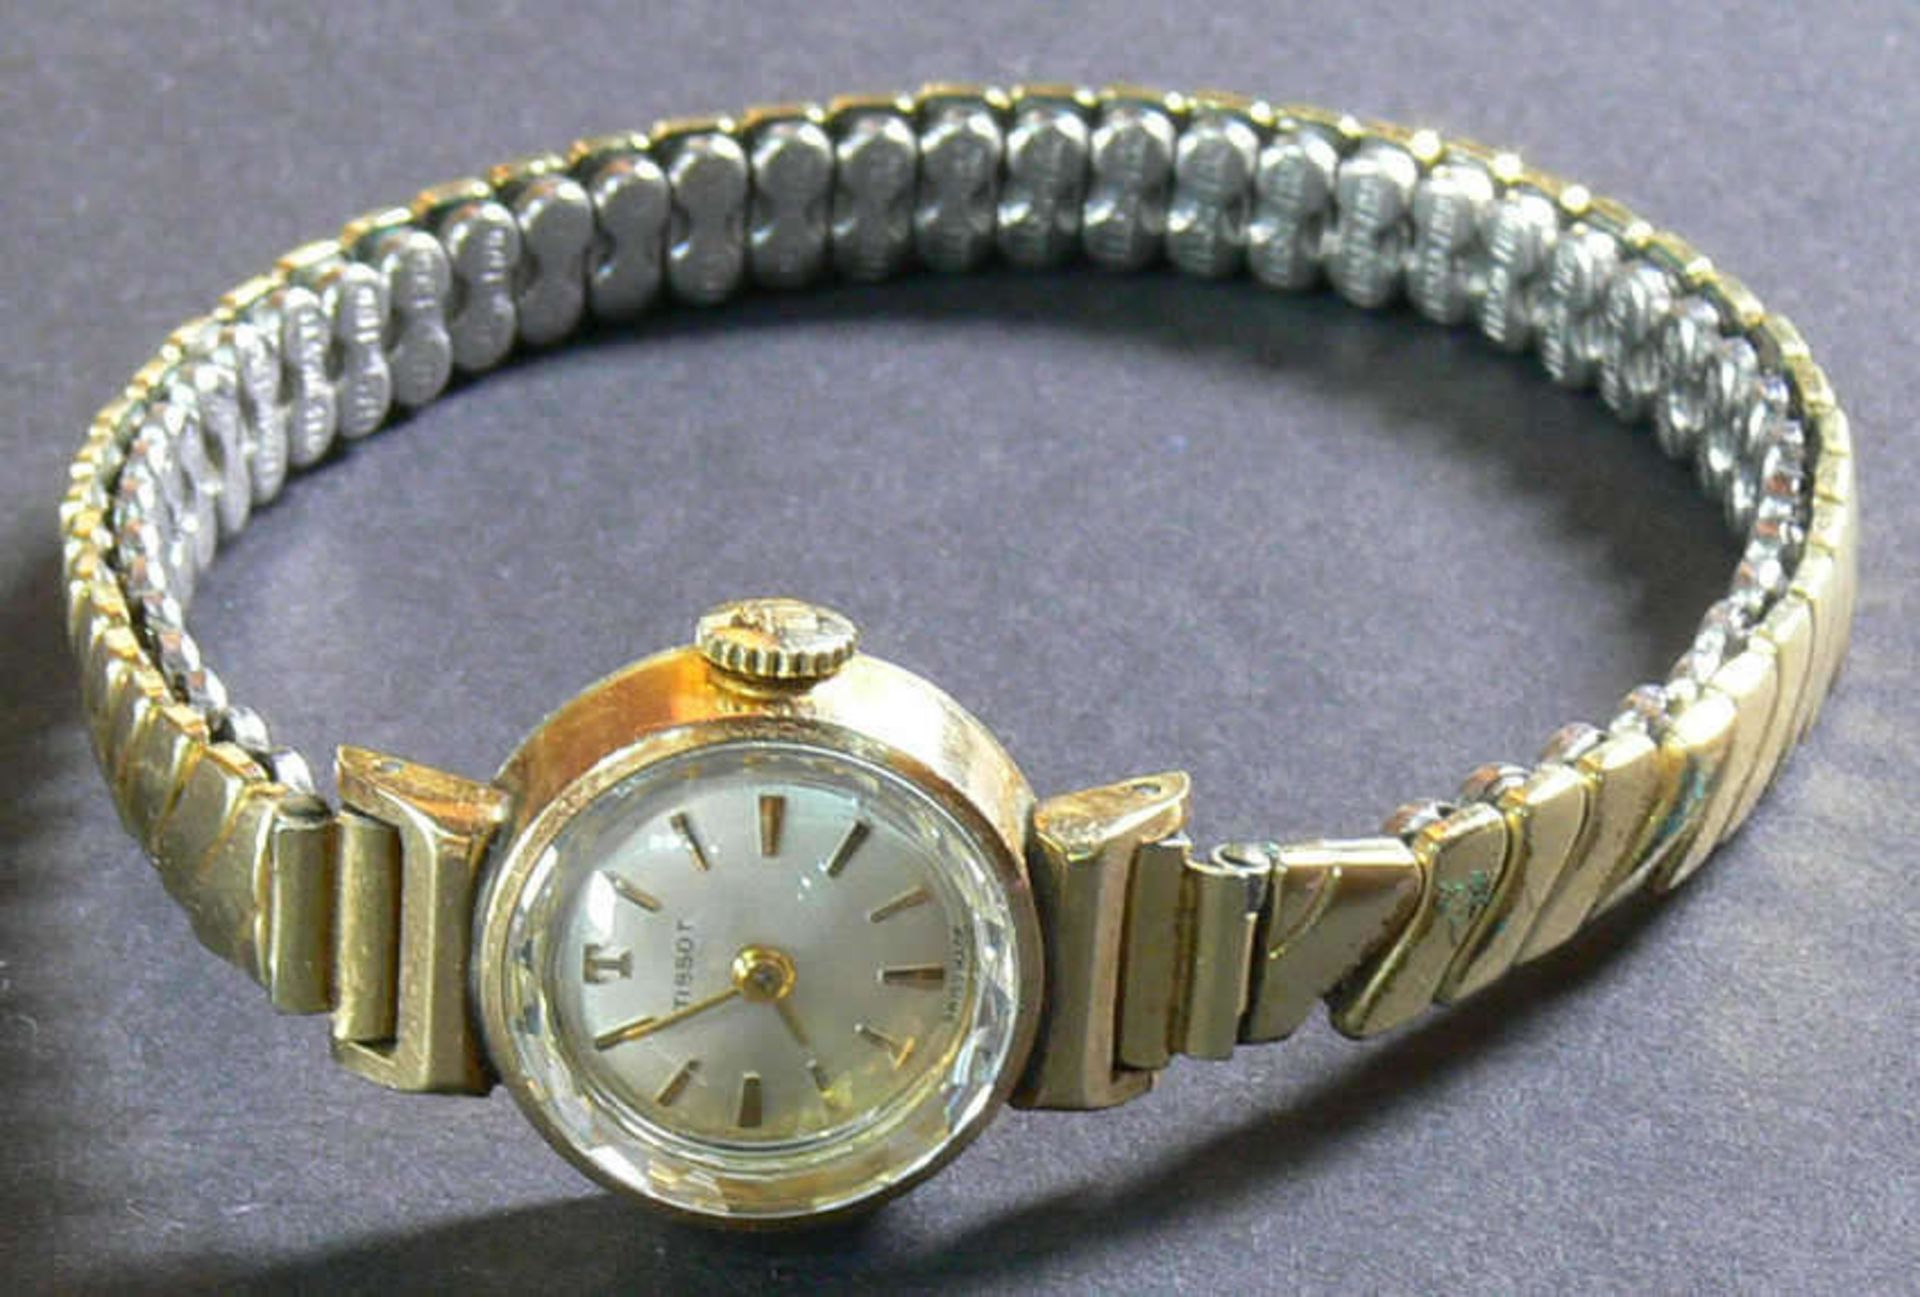 Tissot Damen - Armbanduhr. Mit Flexarmband, mechanisch. Bicolor. Die Uhr läuft an.